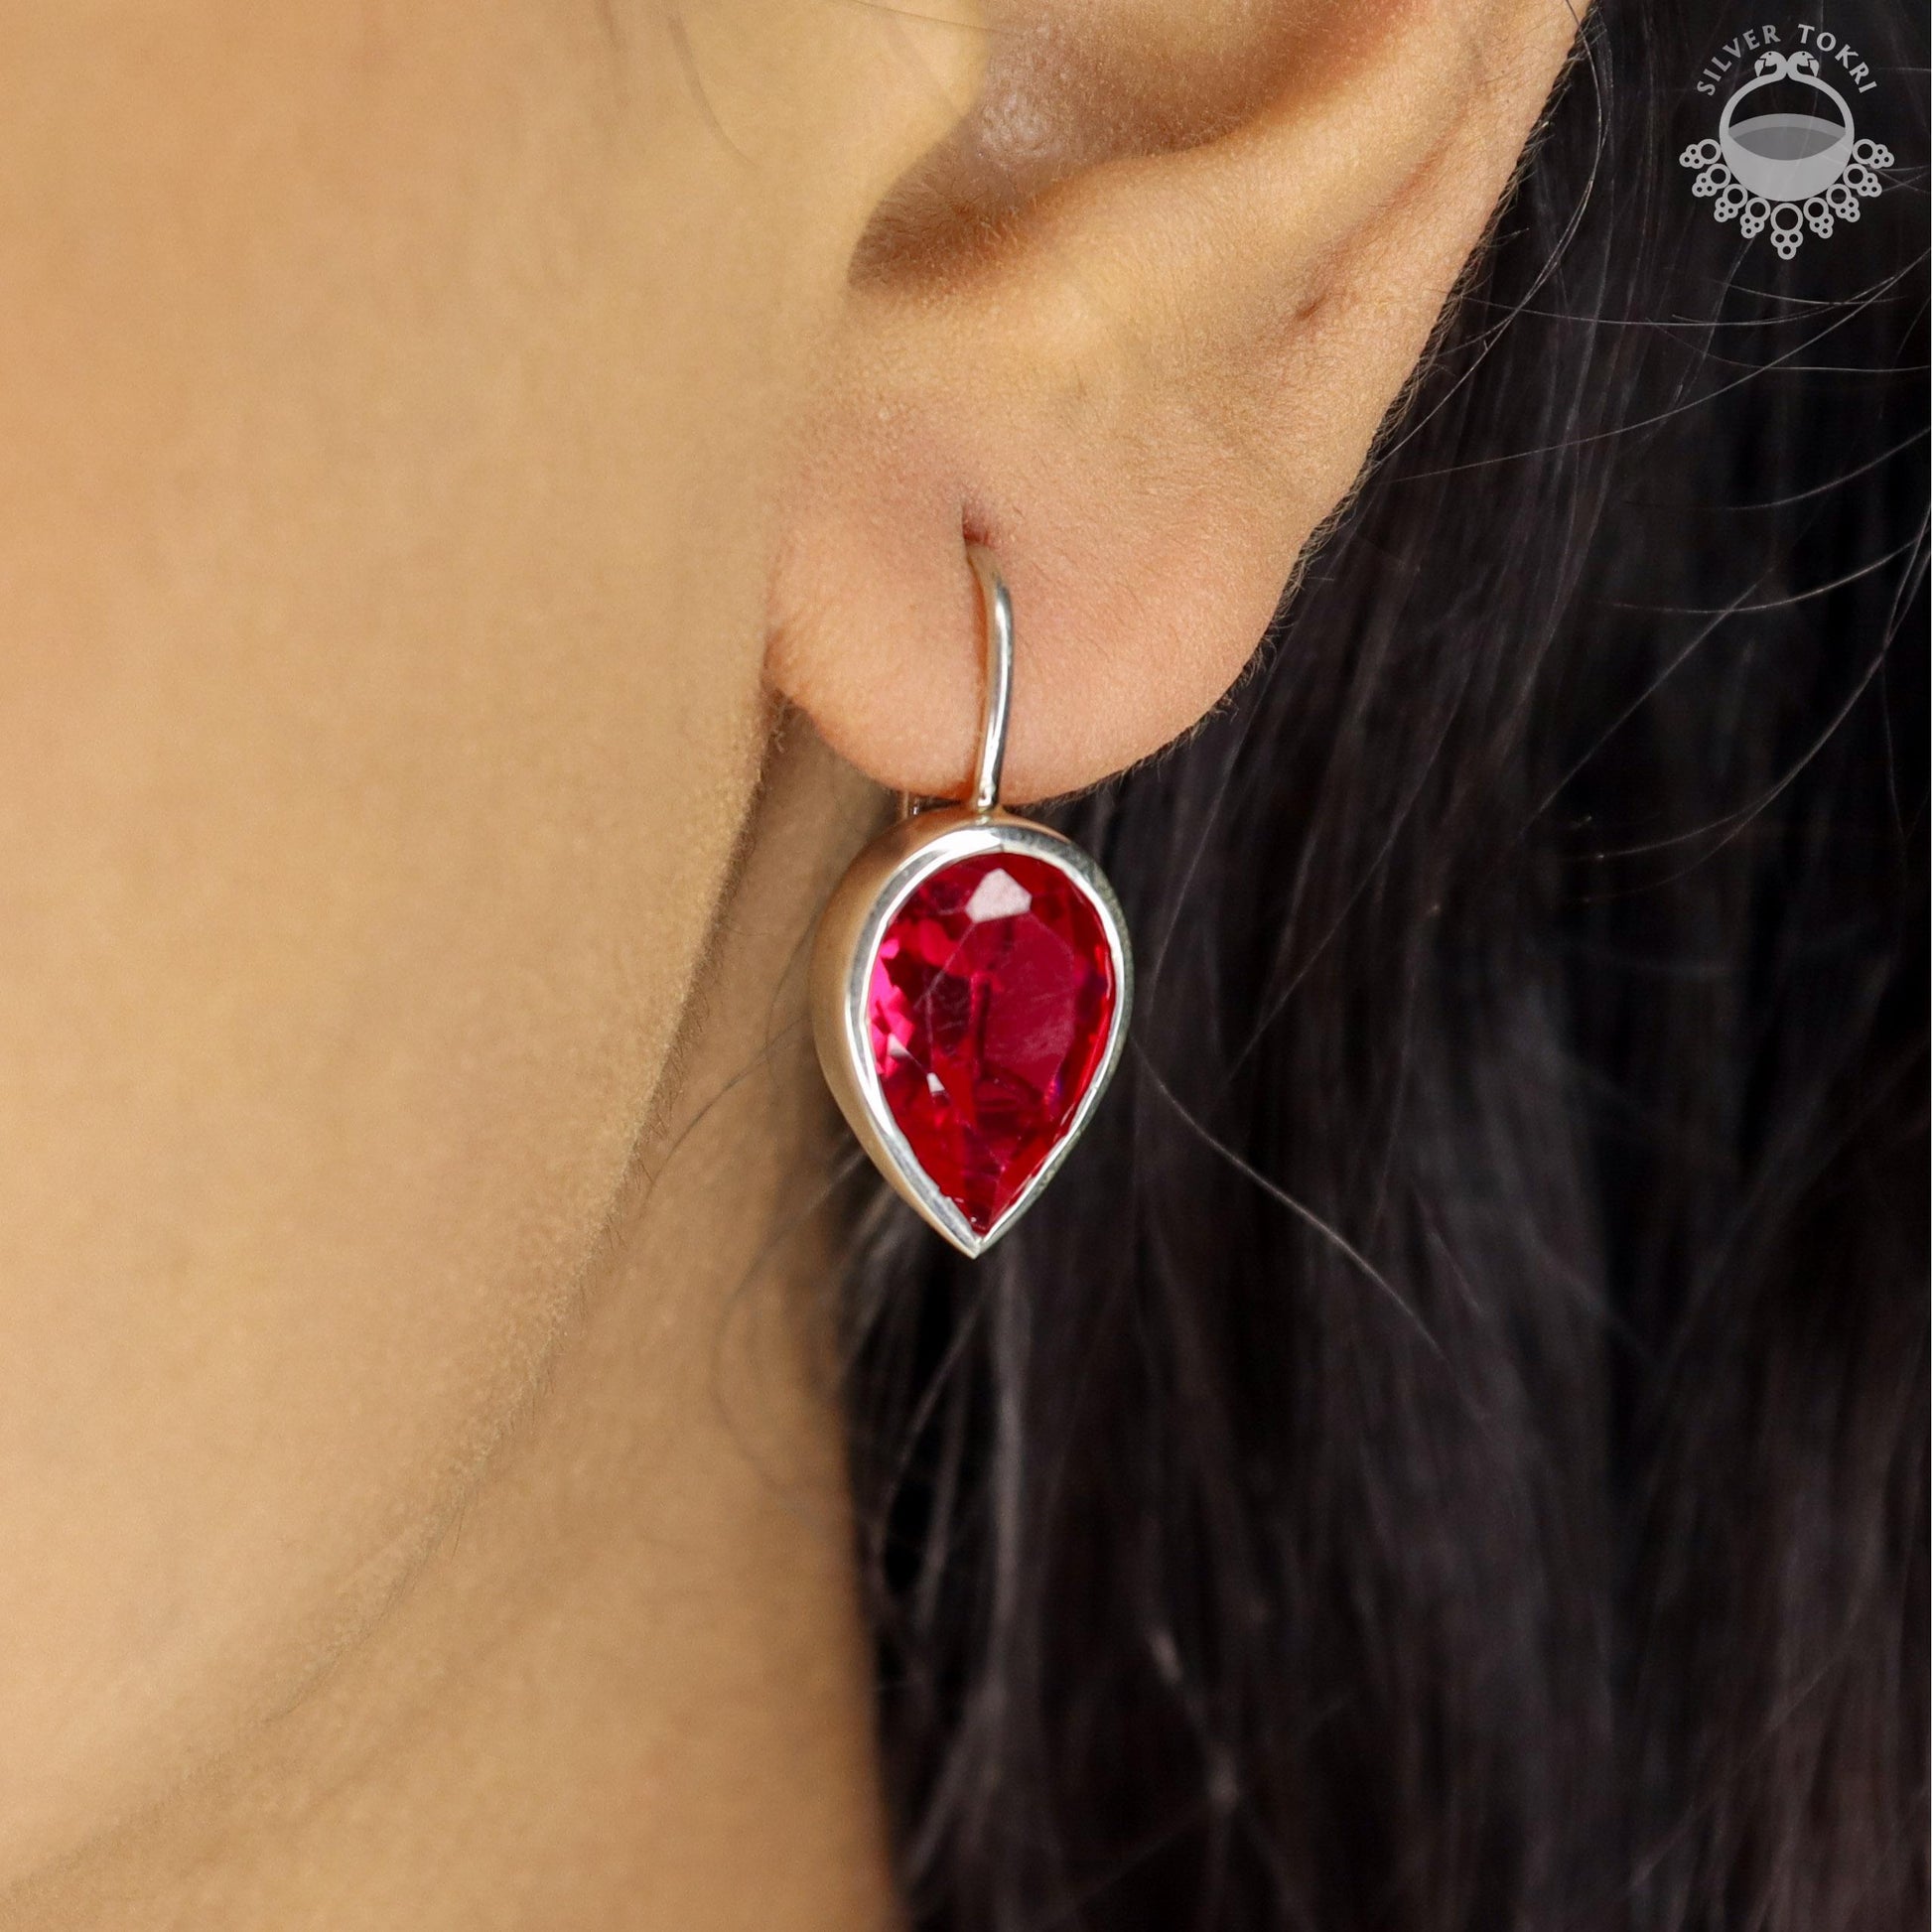 new earrings design      birthday gift for girlfriend     